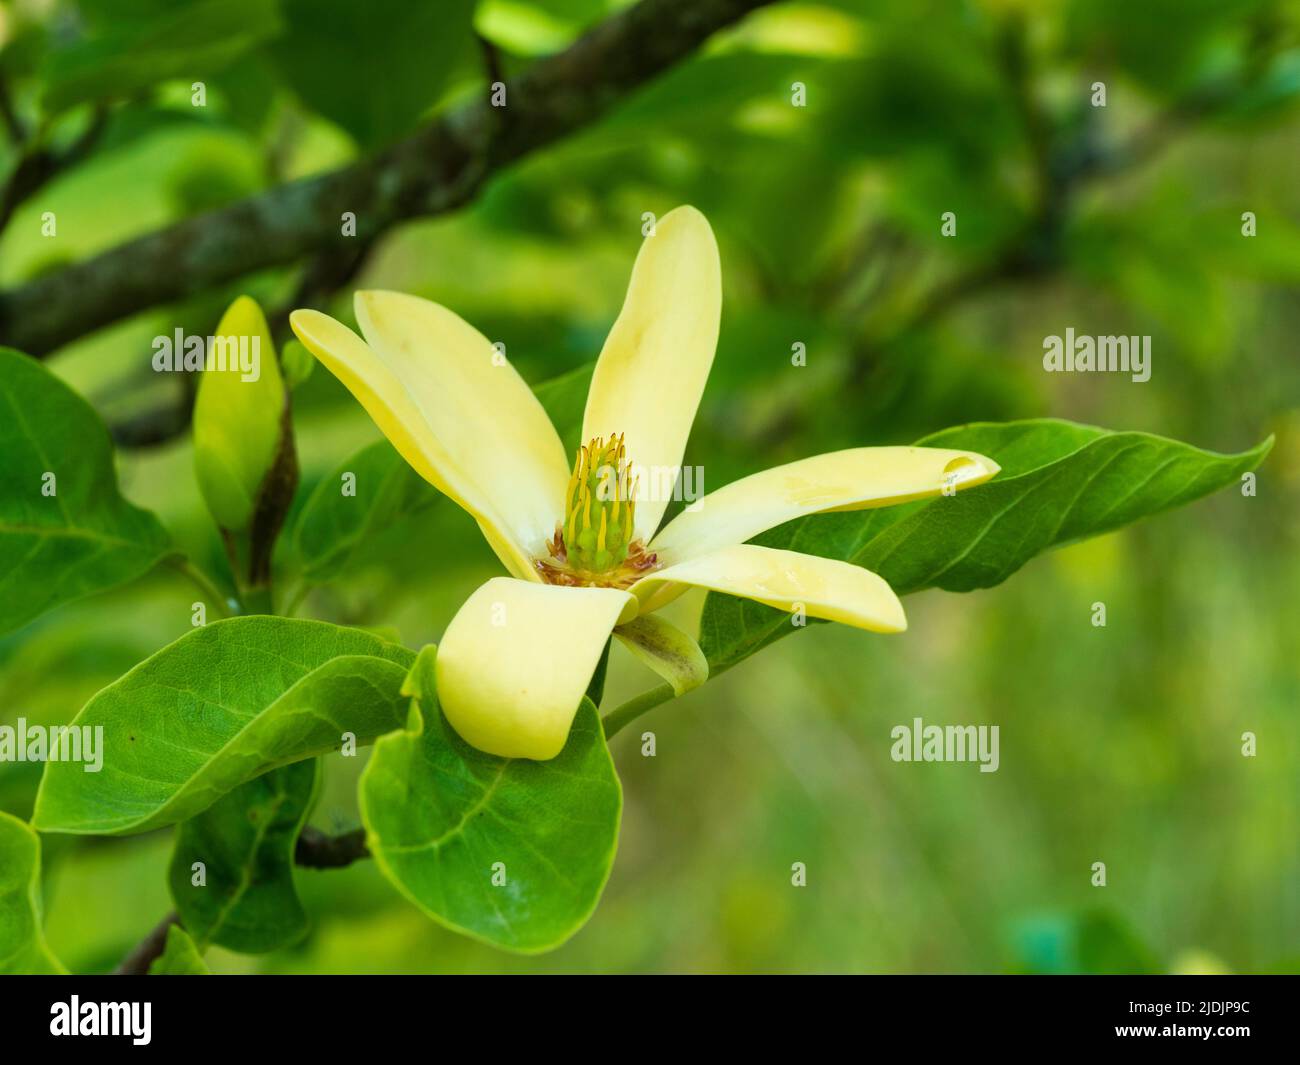 Flores amarillas comparativamente pequeñas de principios de verano floreciendo arbusto grande deciduo o árbol pequeño, Magnolia 'Daphne' Foto de stock